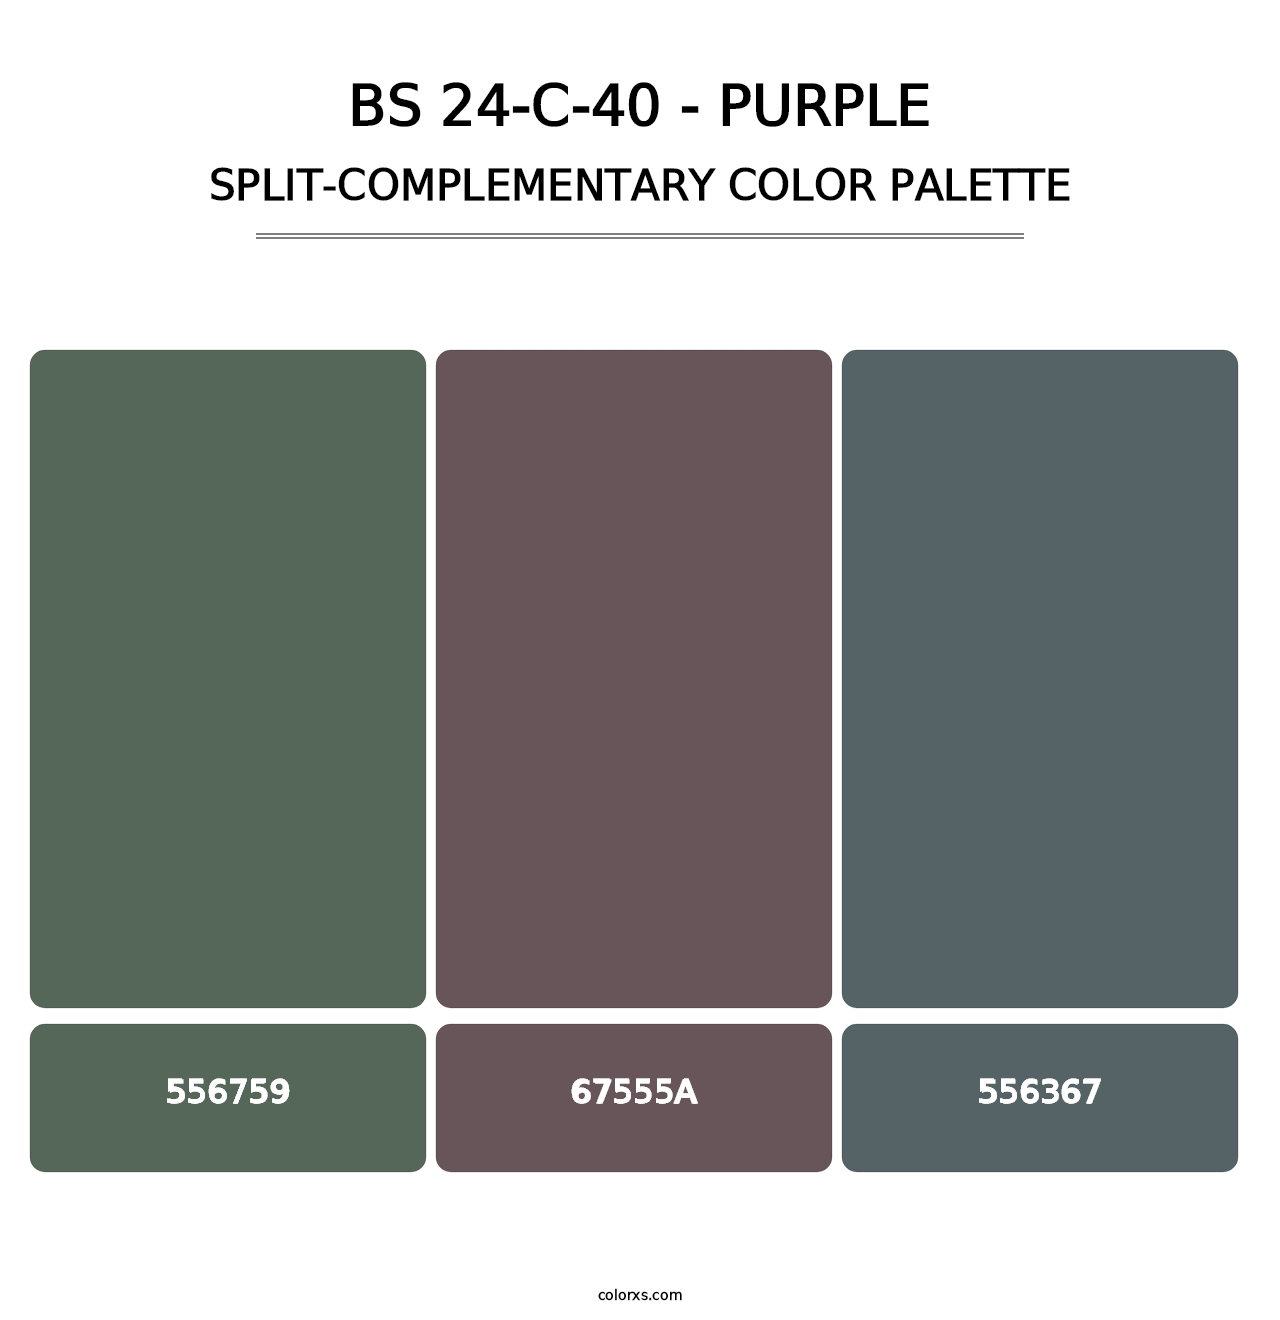 BS 24-C-40 - Purple - Split-Complementary Color Palette